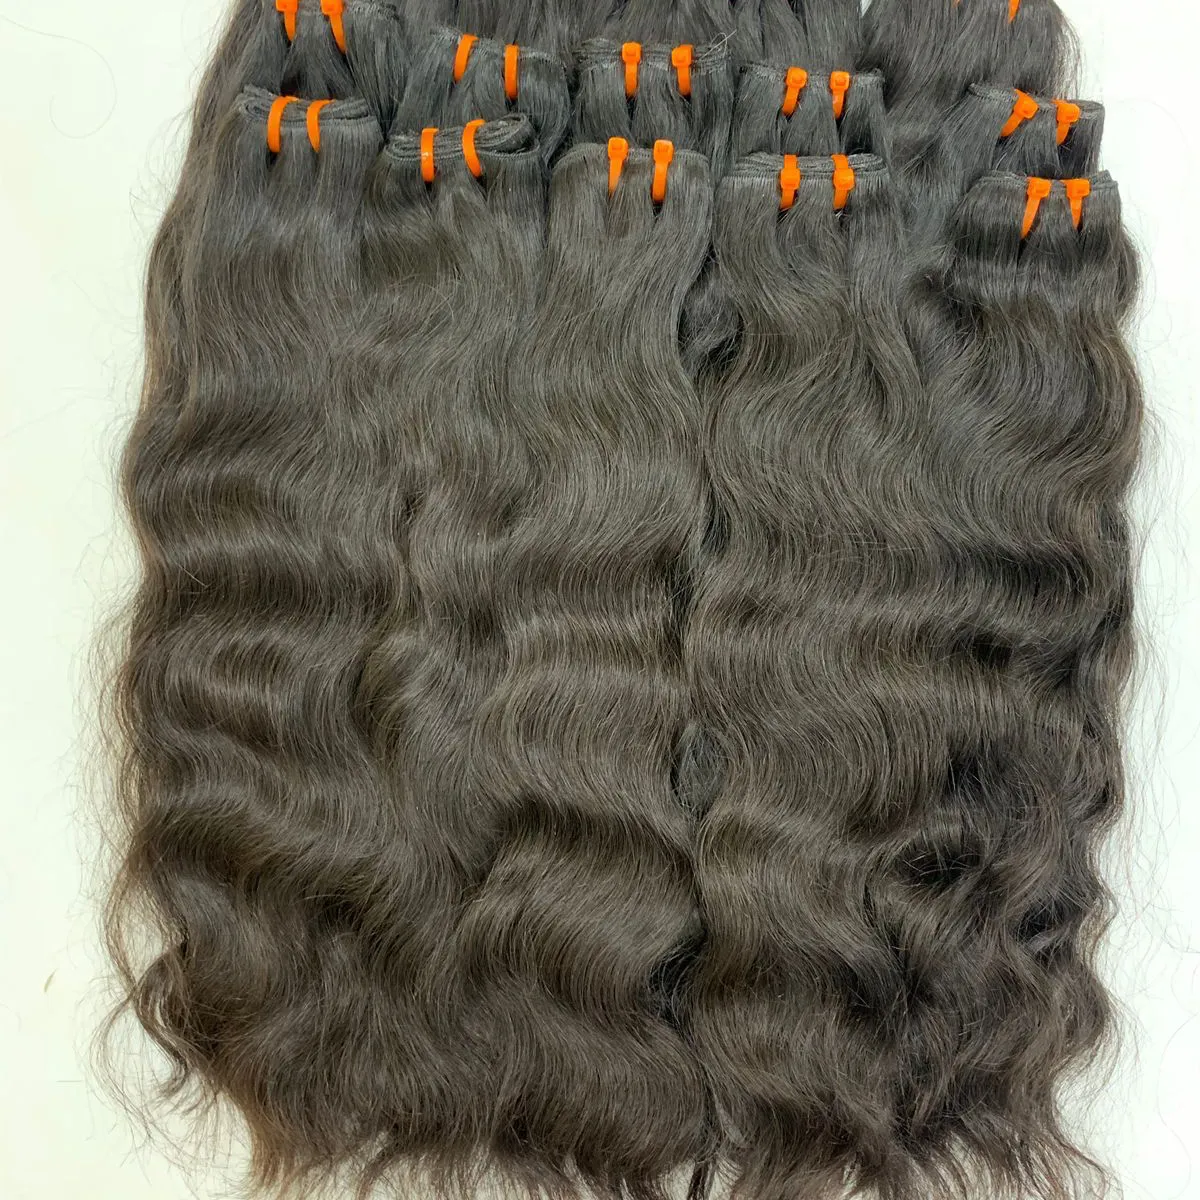 थोक कच्चे भारतीय मानव बाल बंडल, कच्चे वर्जिन क्यूटिकल संरेखित बाल बंडल बुनाई, दो बार खींचे गए सस्ते मानव बाल एक्सटेंशन